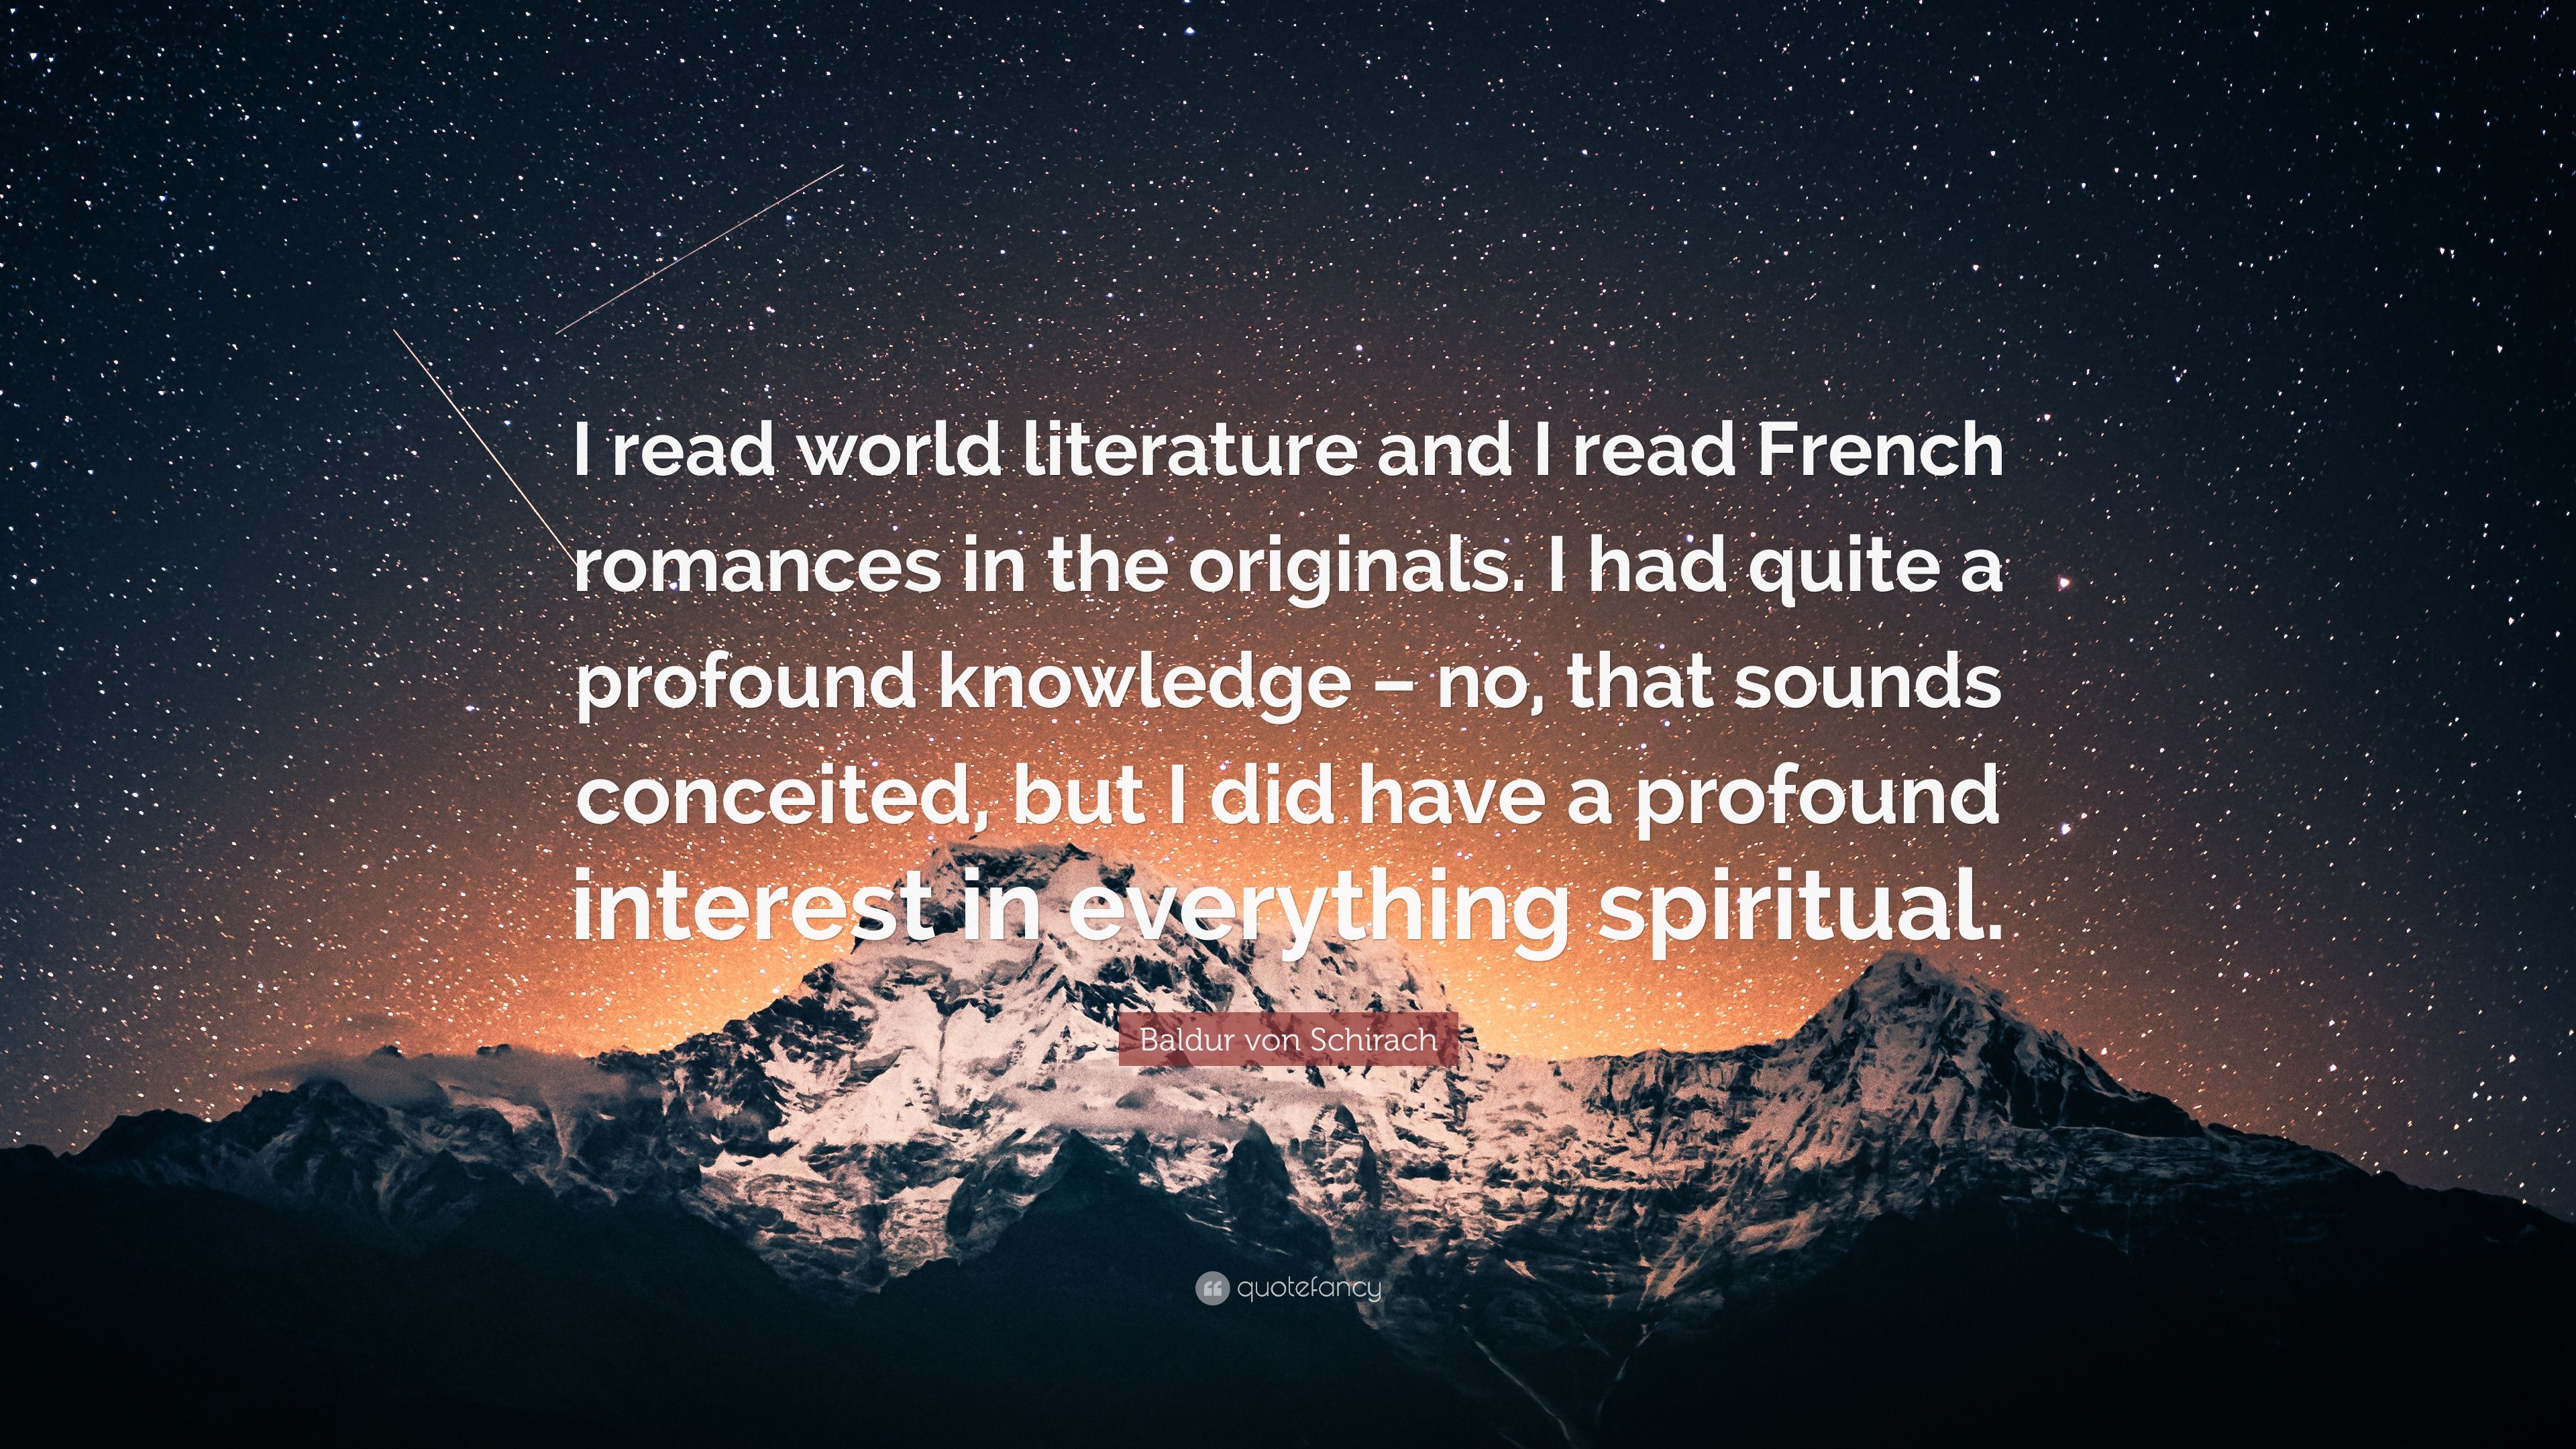 Baldur von Schirach Quote: “I read world literature and I